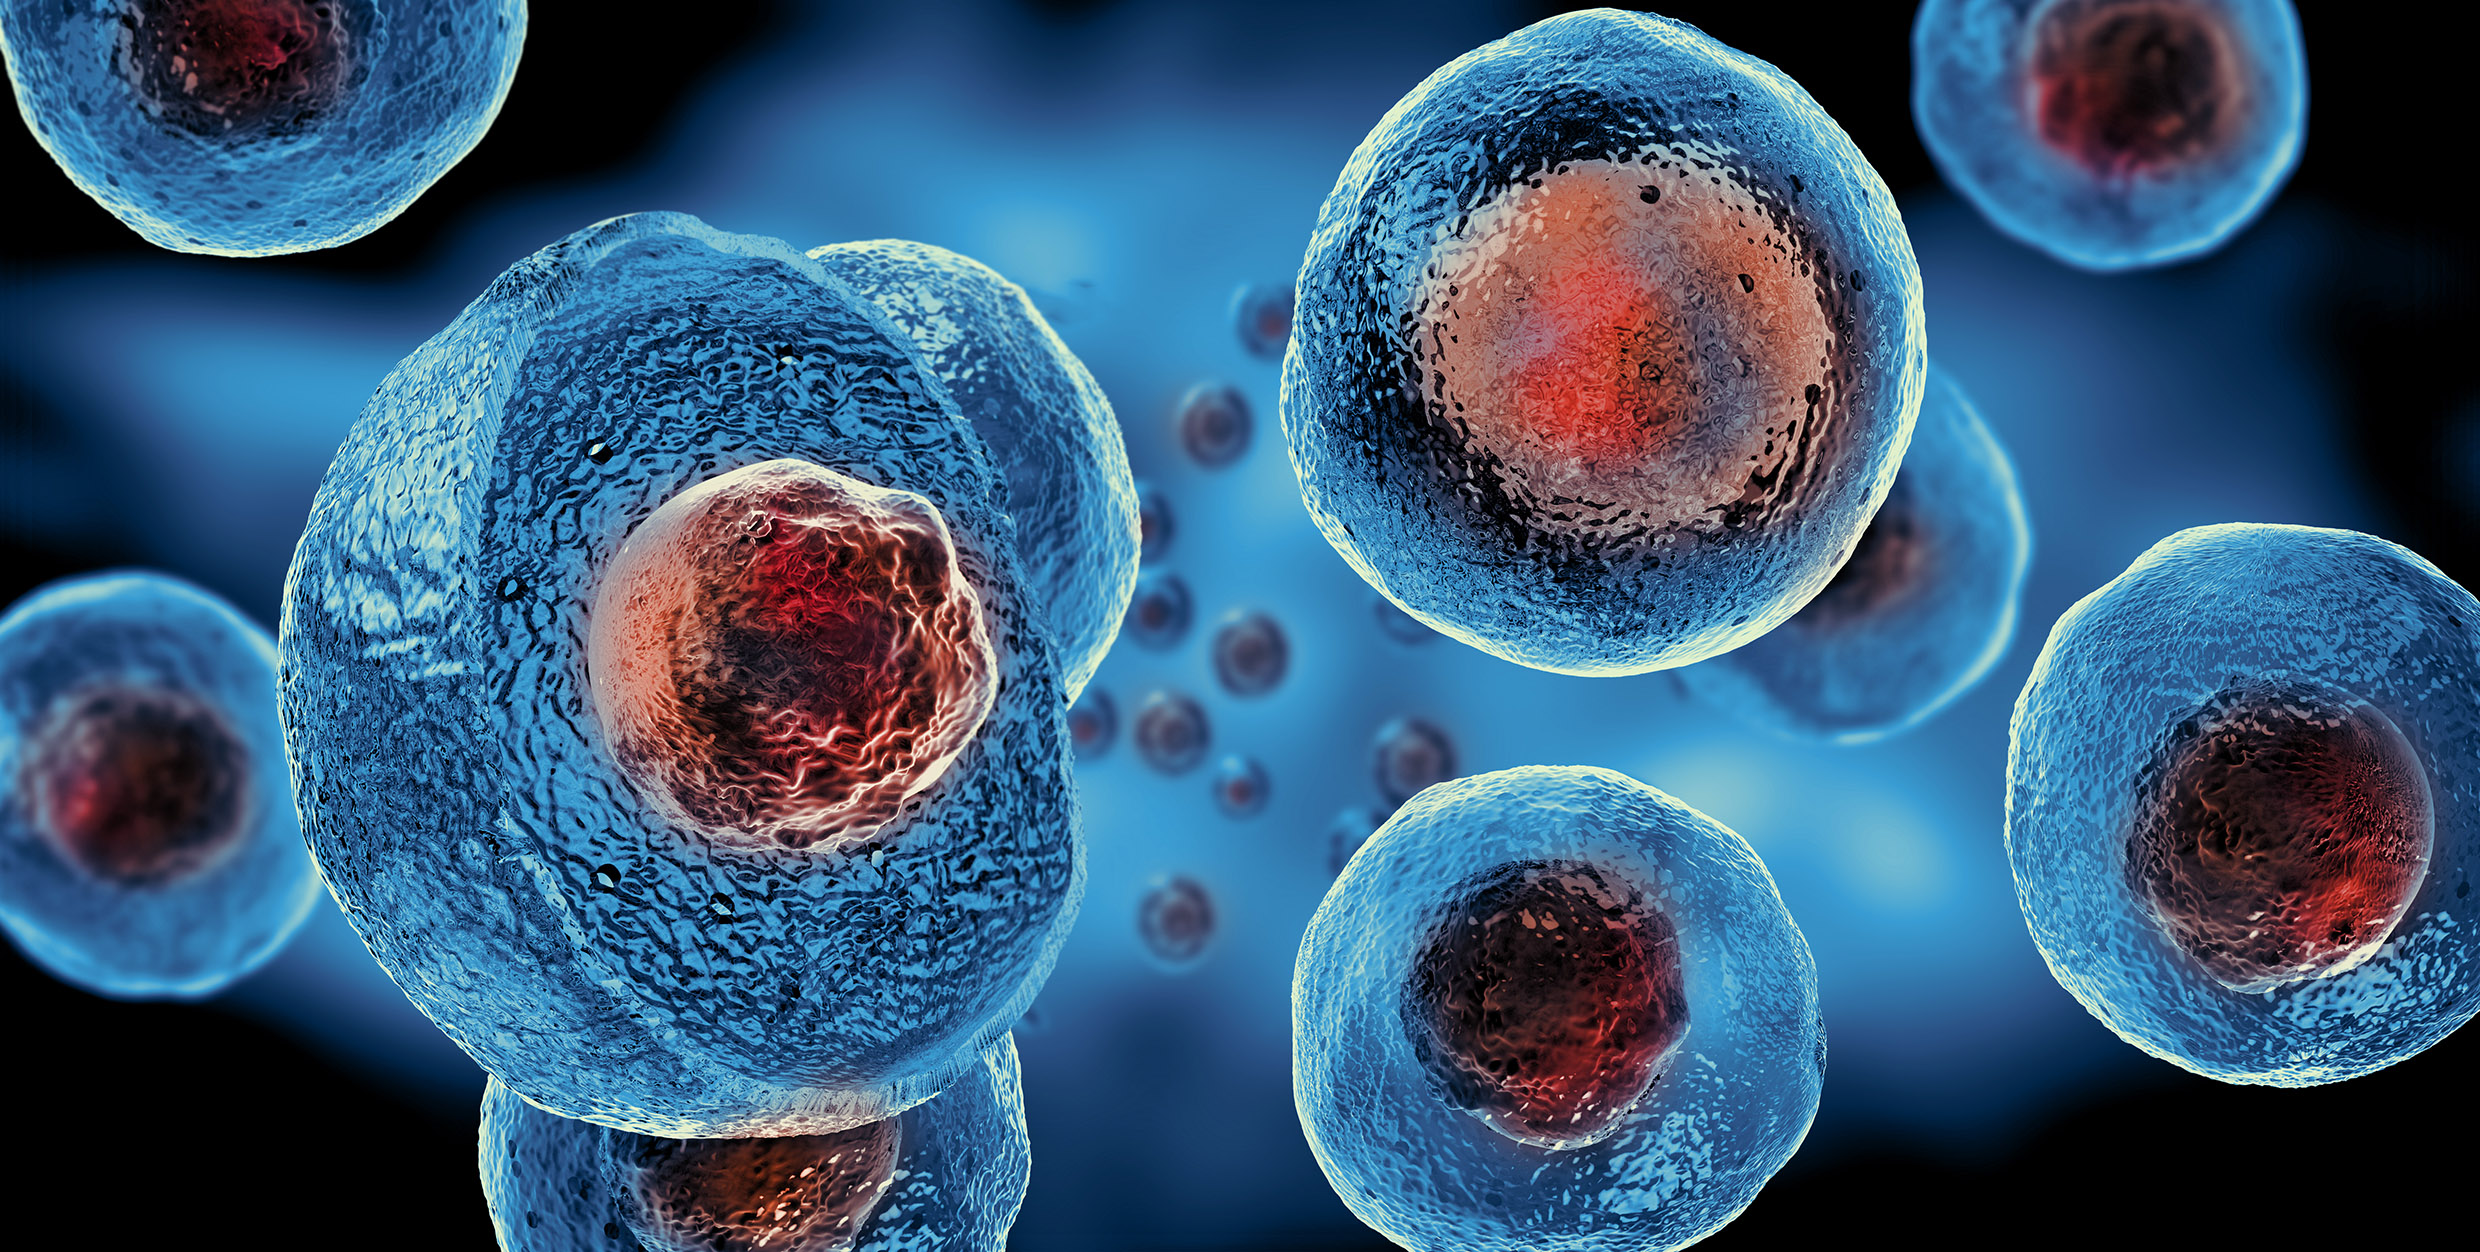 幹細胞具有可以分化的特性，並有自我更新的能力，細胞分裂後仍可以產生一個與自身特性相同的幹細胞。